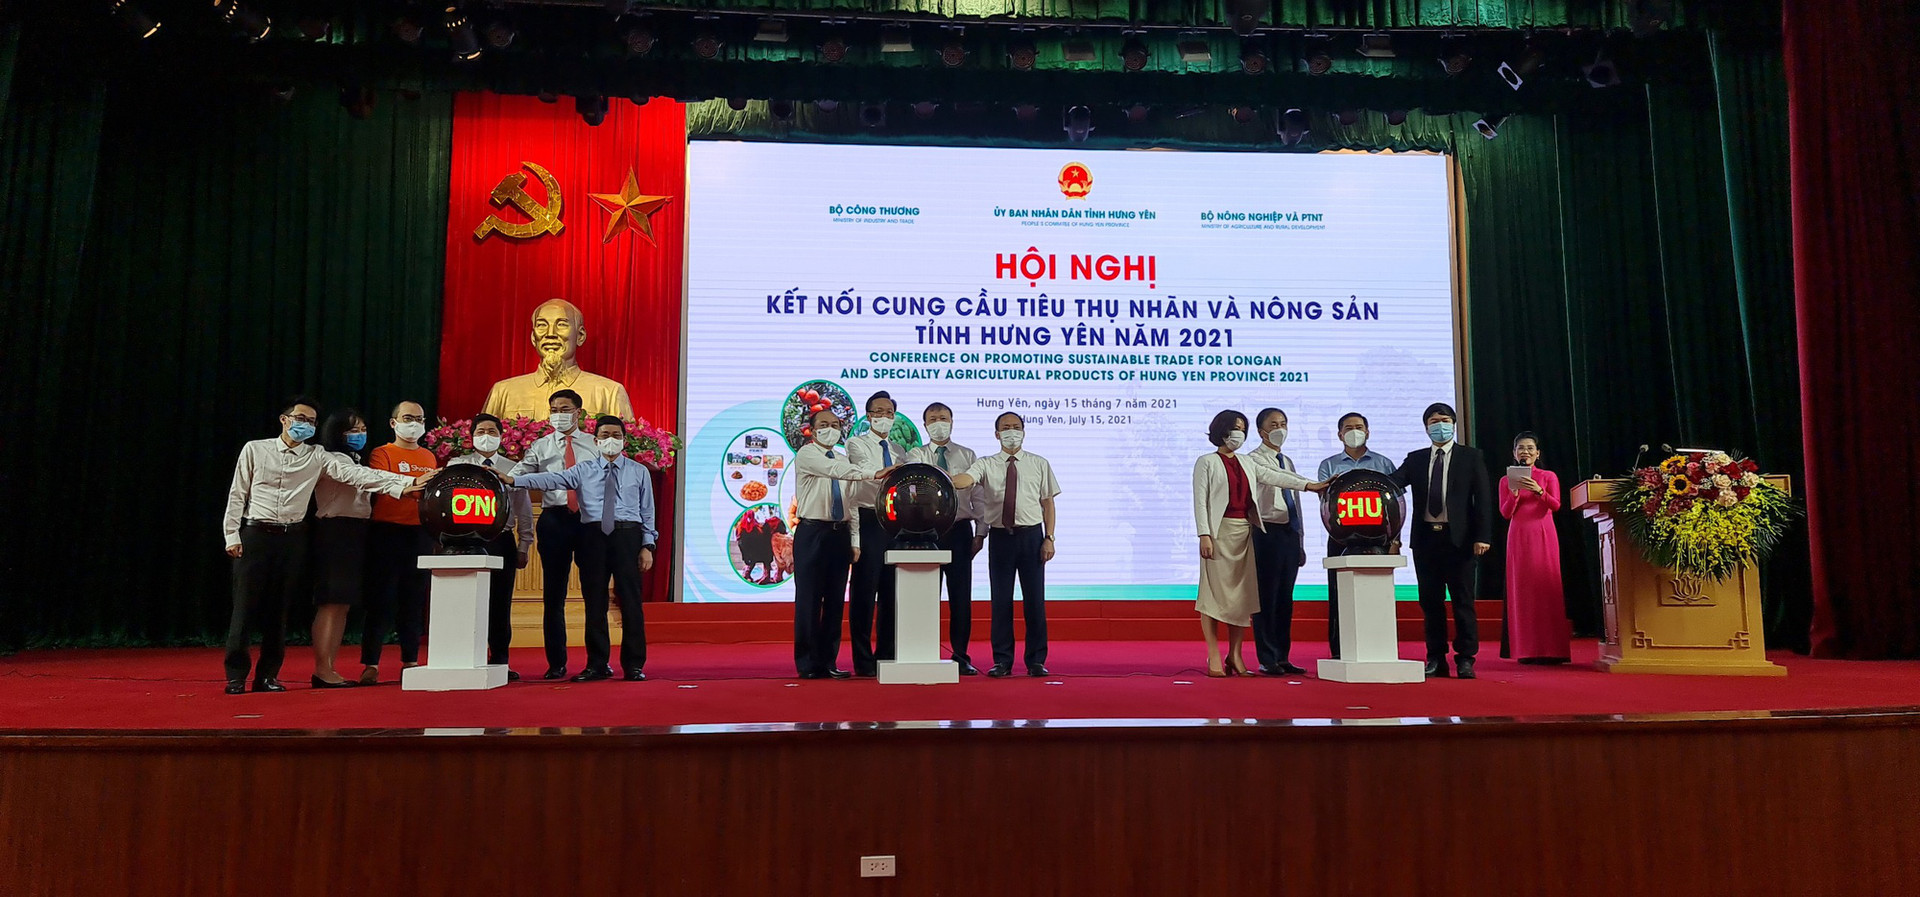 Sàn TMĐT Postmart.vn sẽ hỗ trợ tiêu thụ 1.500 tấn nhãn Hưng Yên - Ảnh 1.